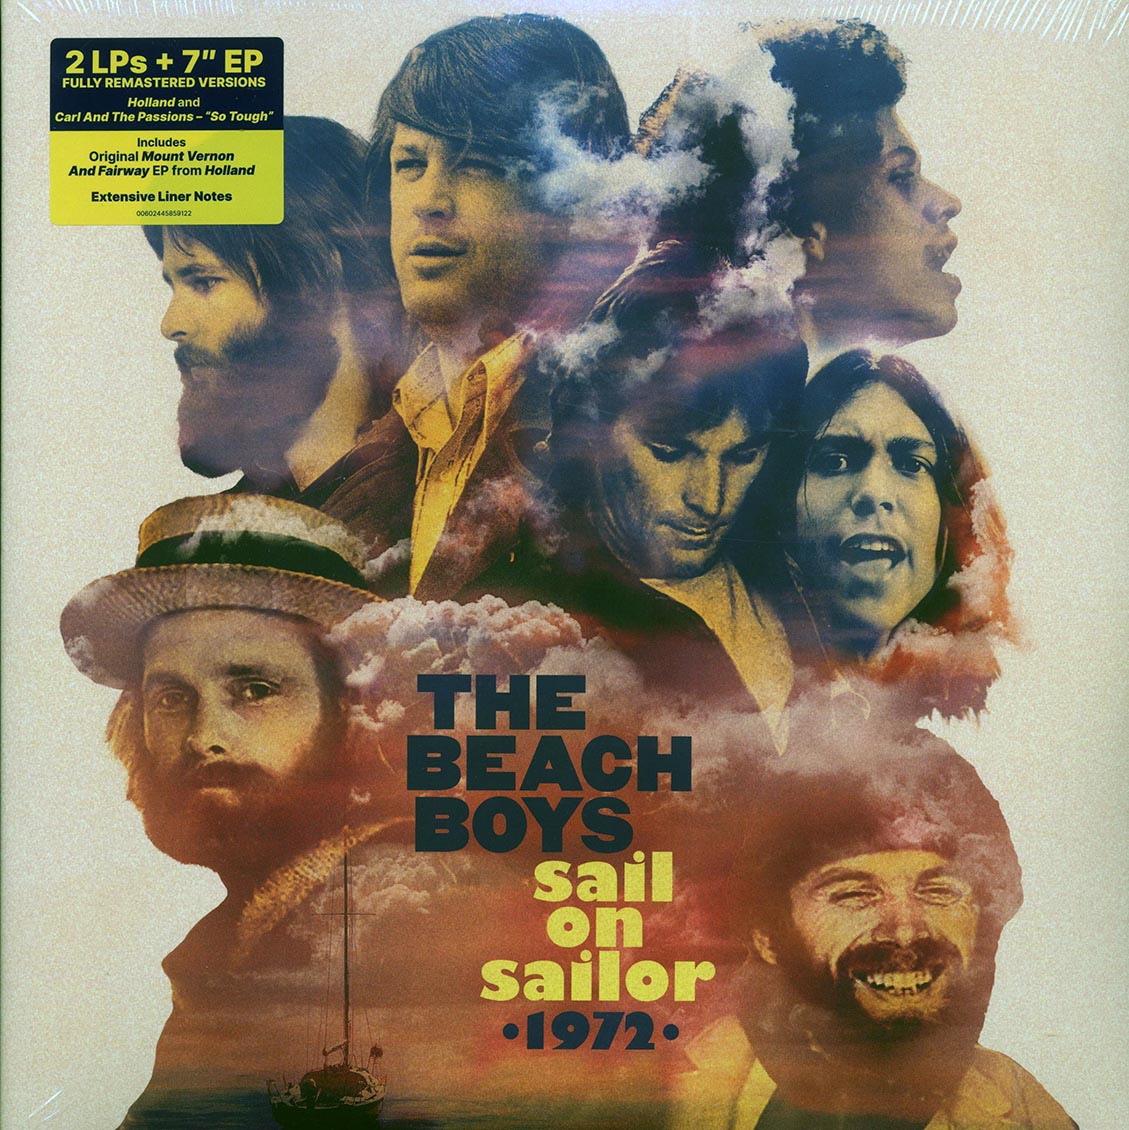 The Beach Boys - Sail On Sailor 1972 (2xLP) (remastered) (incl. 7") - Vinyl LP